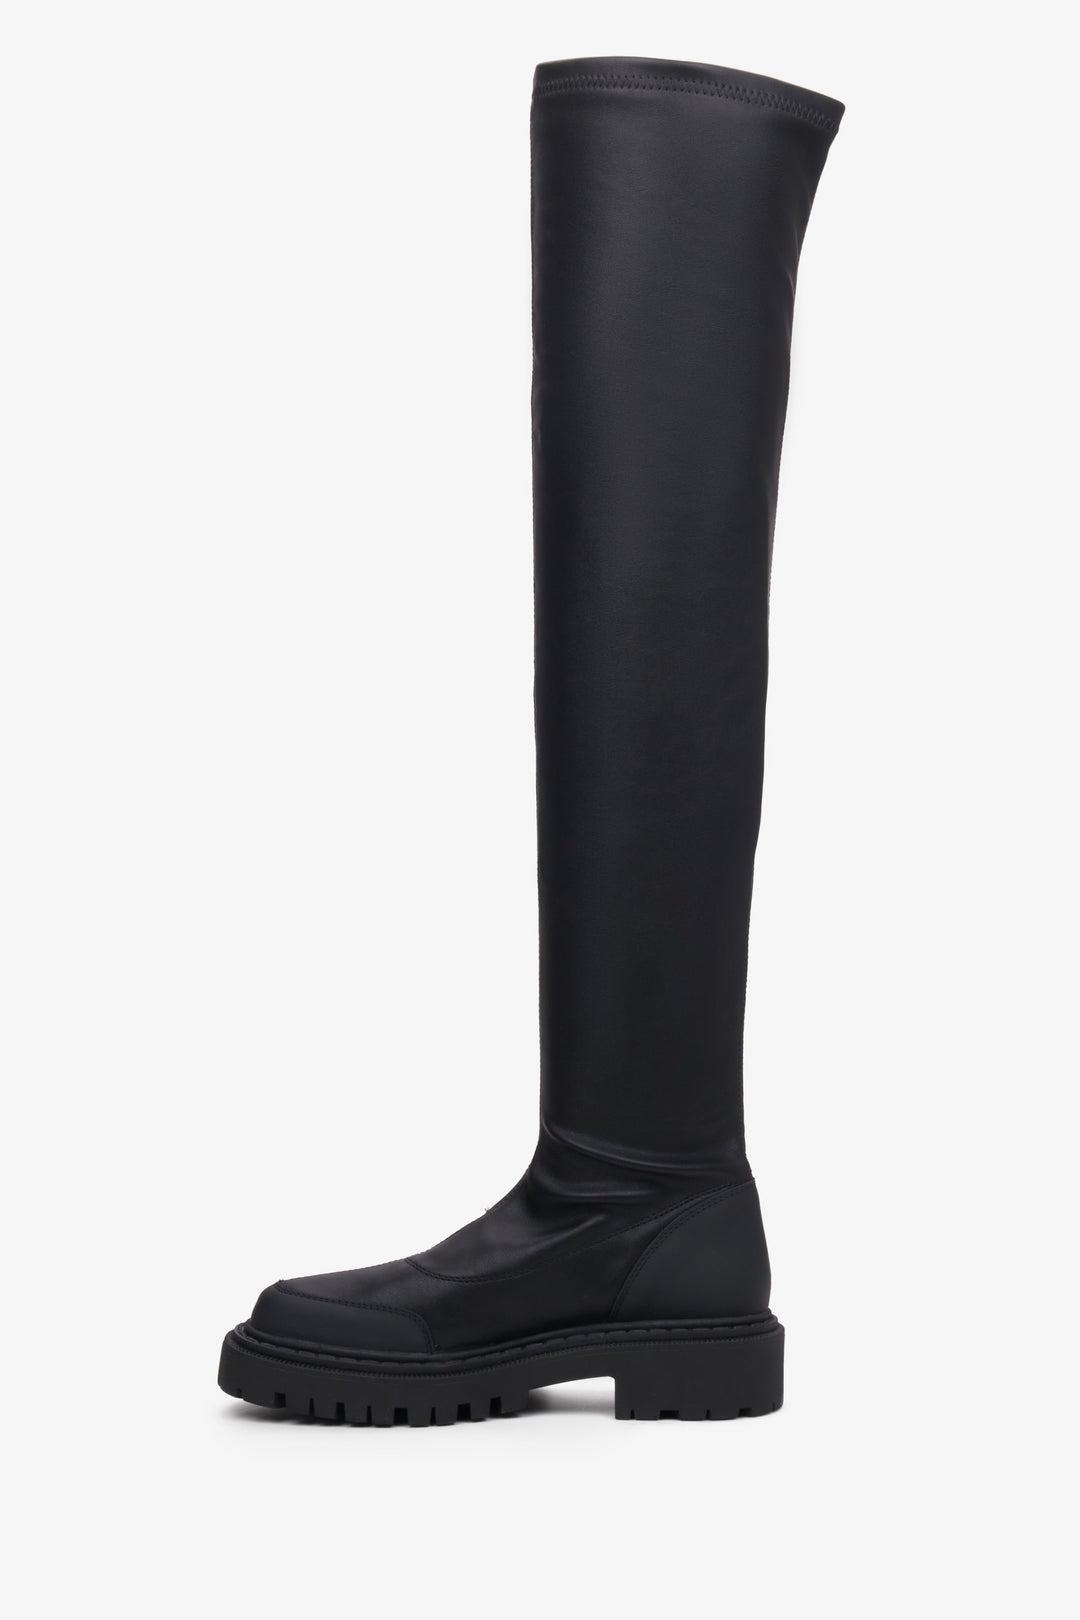 Czarne kozaki damskie z elastyczną cholewą Estro - profil buta.